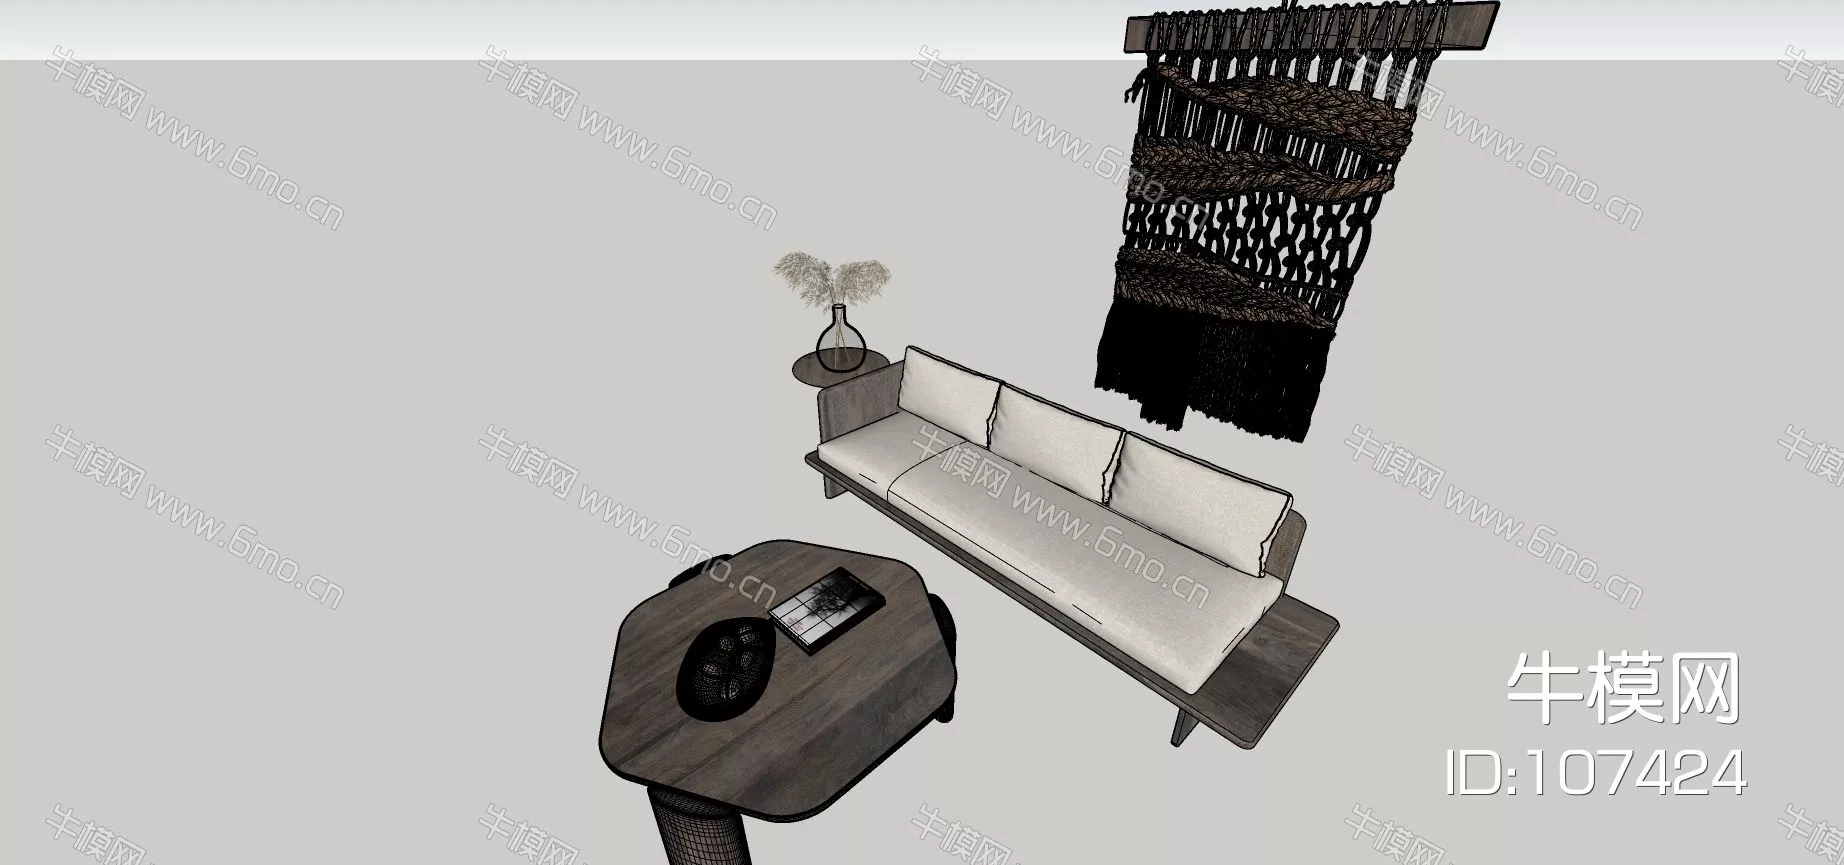 RATTAN SOFA - SKETCHUP 3D MODEL - ENSCAPE - 107424